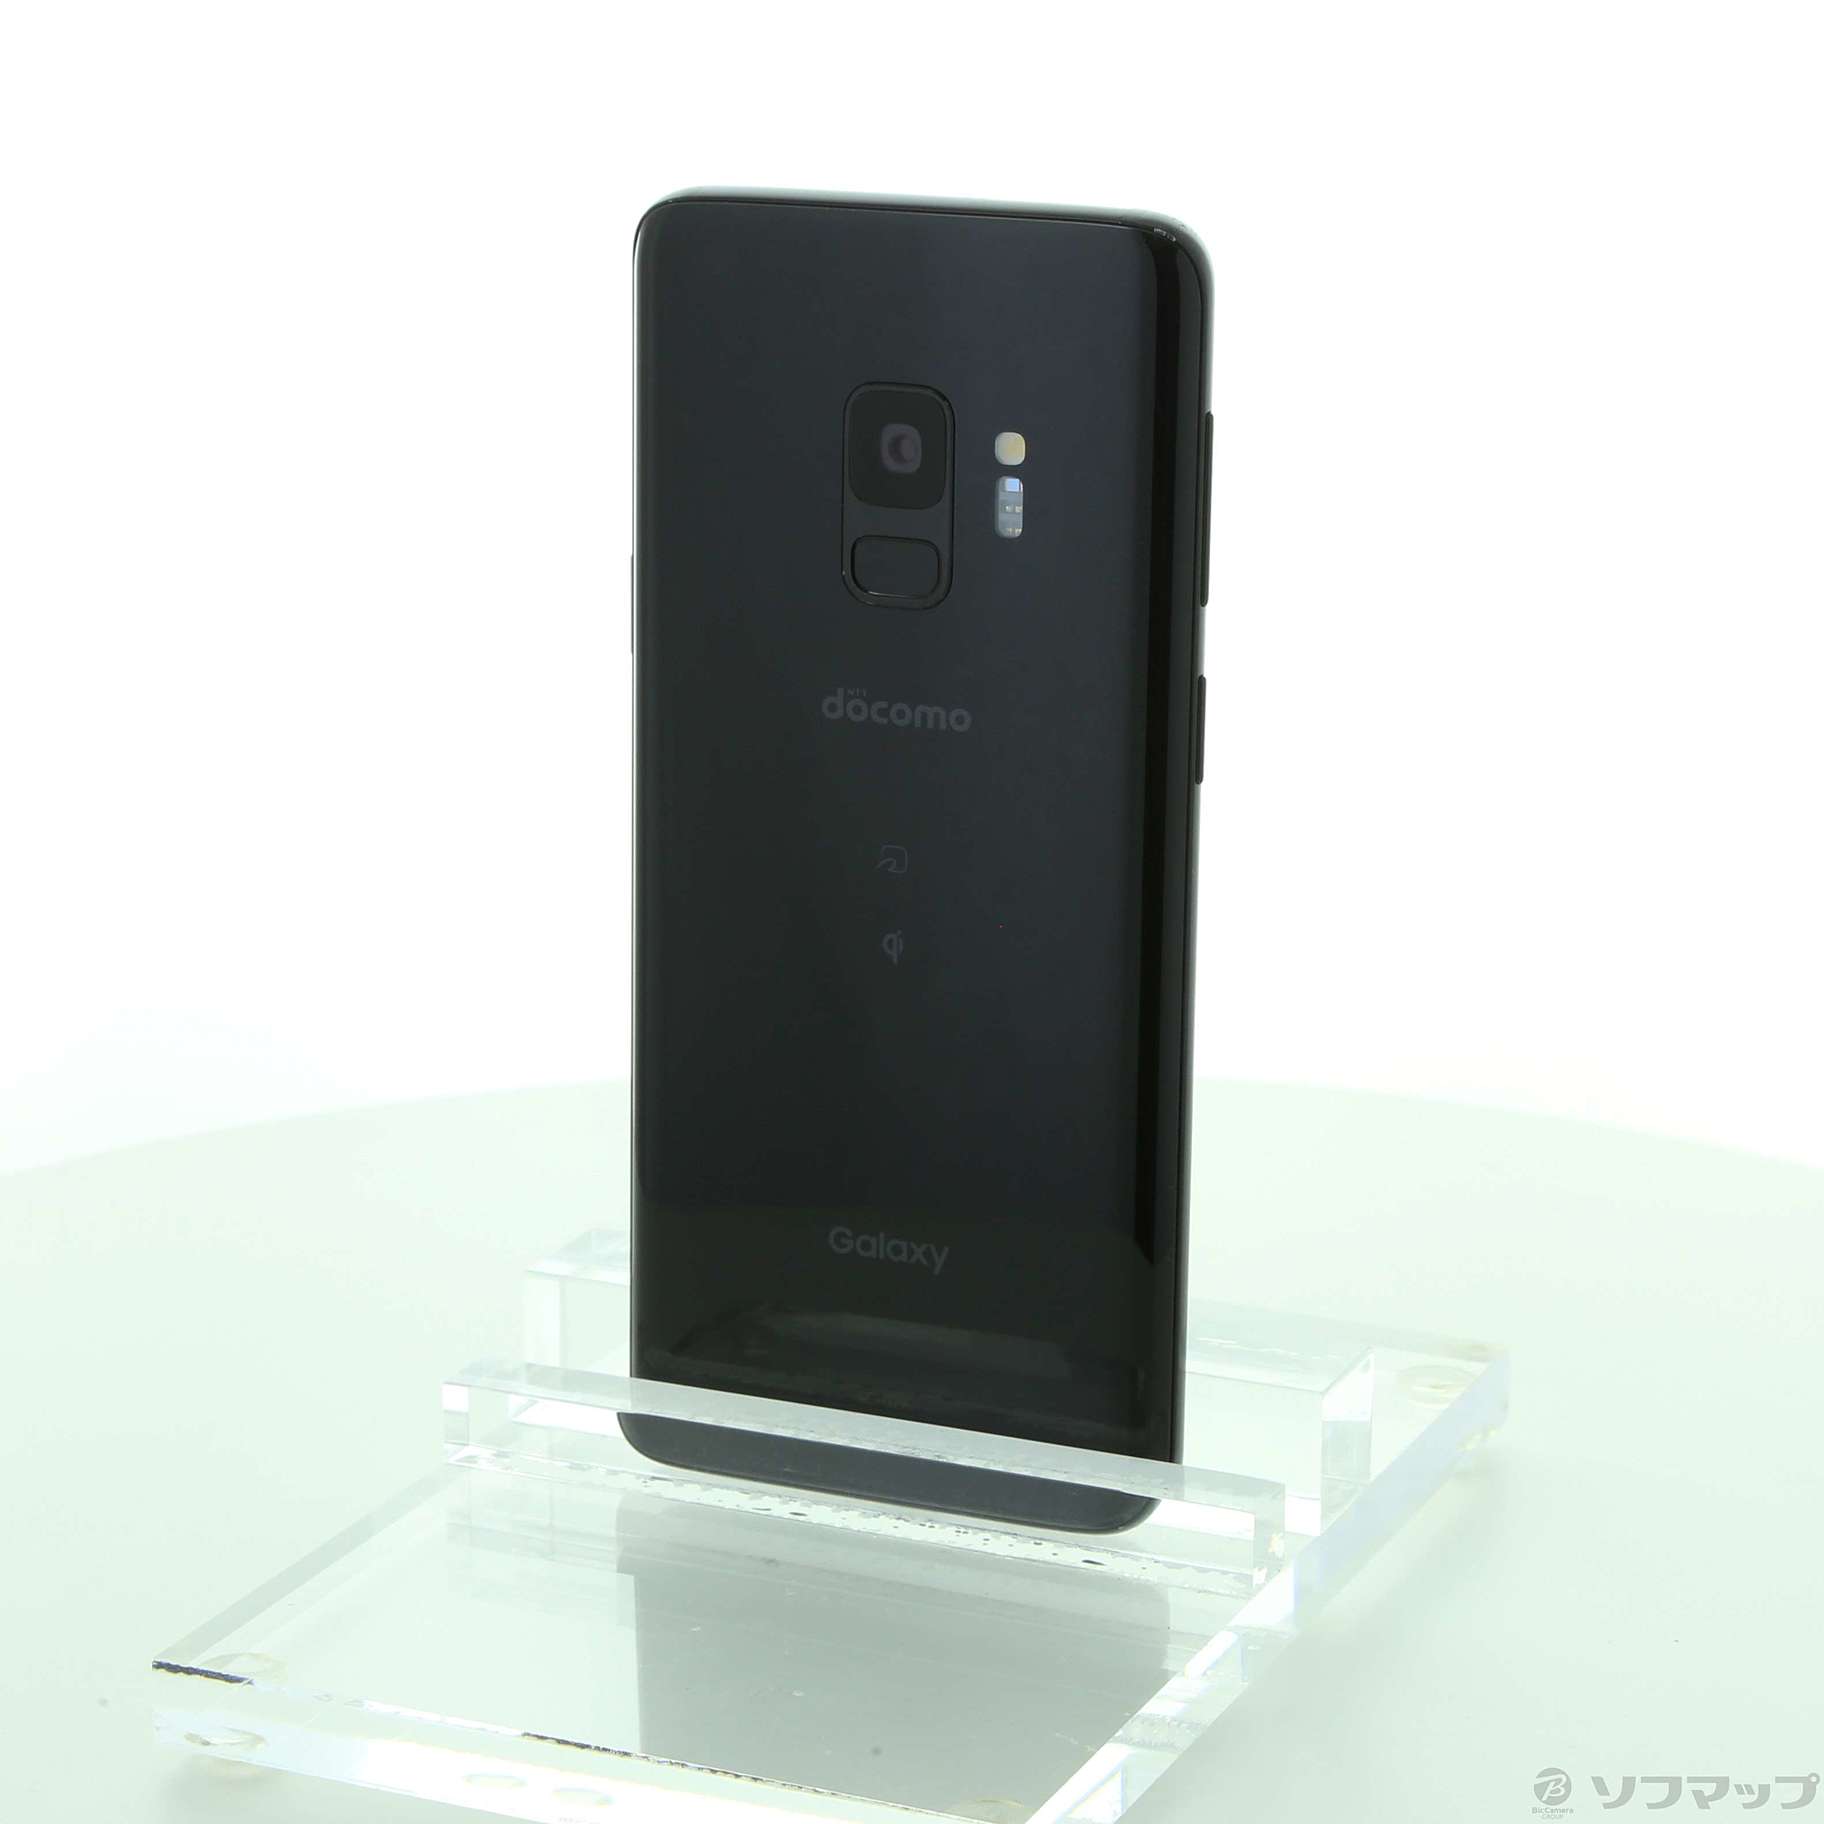 日本未入荷!入手困難! Galaxy S9 Midnight Black 64 GB docomo | www.mizenplace.com